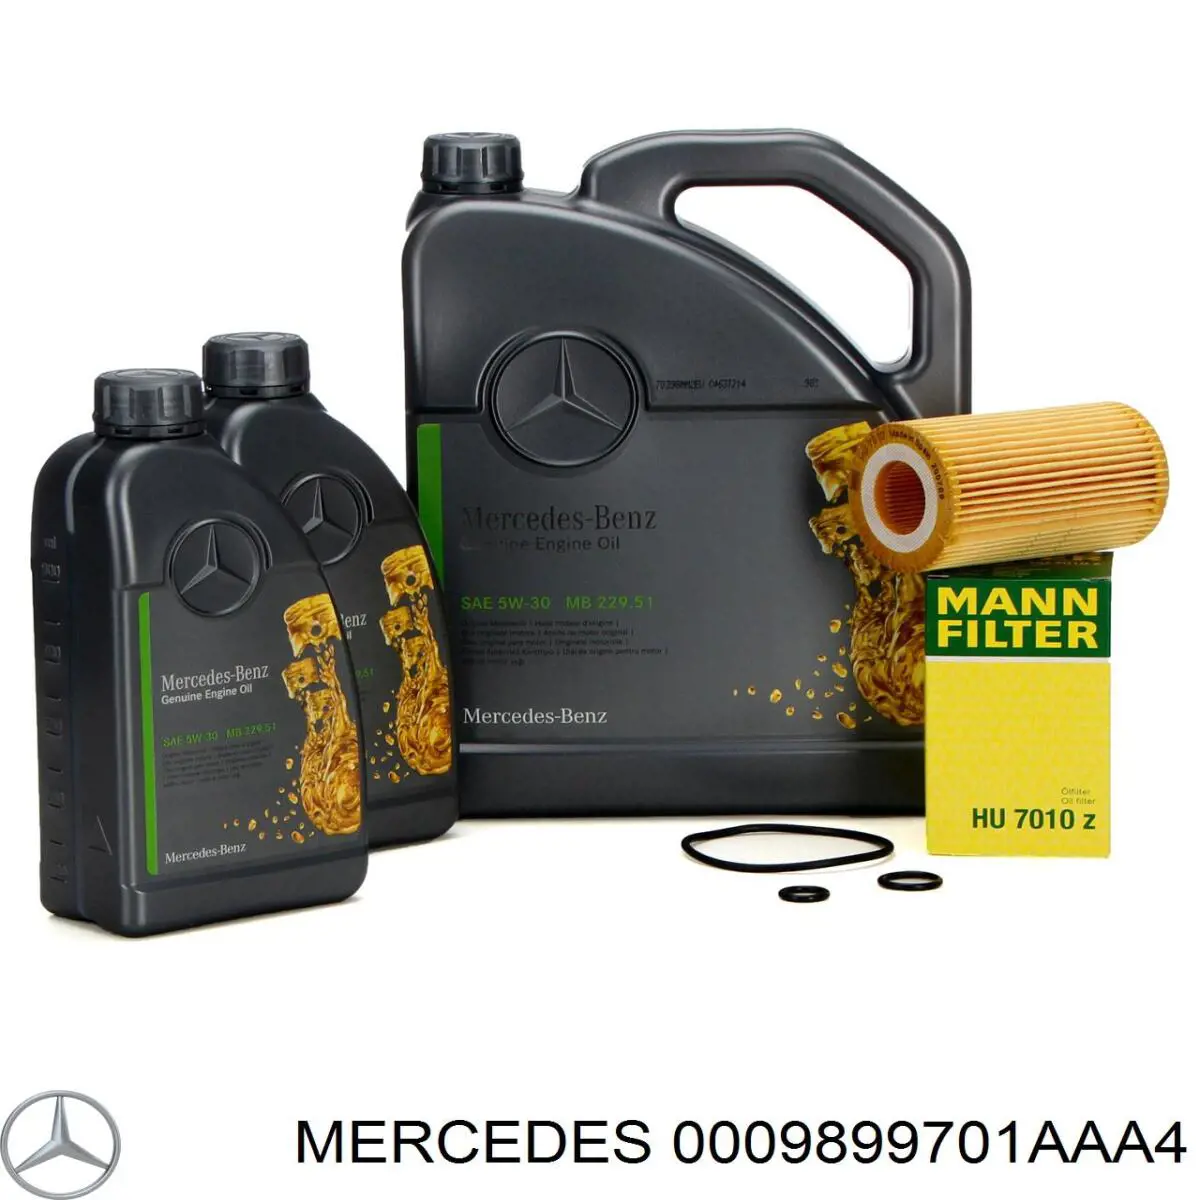 Mercedes PKW Motorenol 5W-30 Синтетическое 5 L (0009899701AAA4)